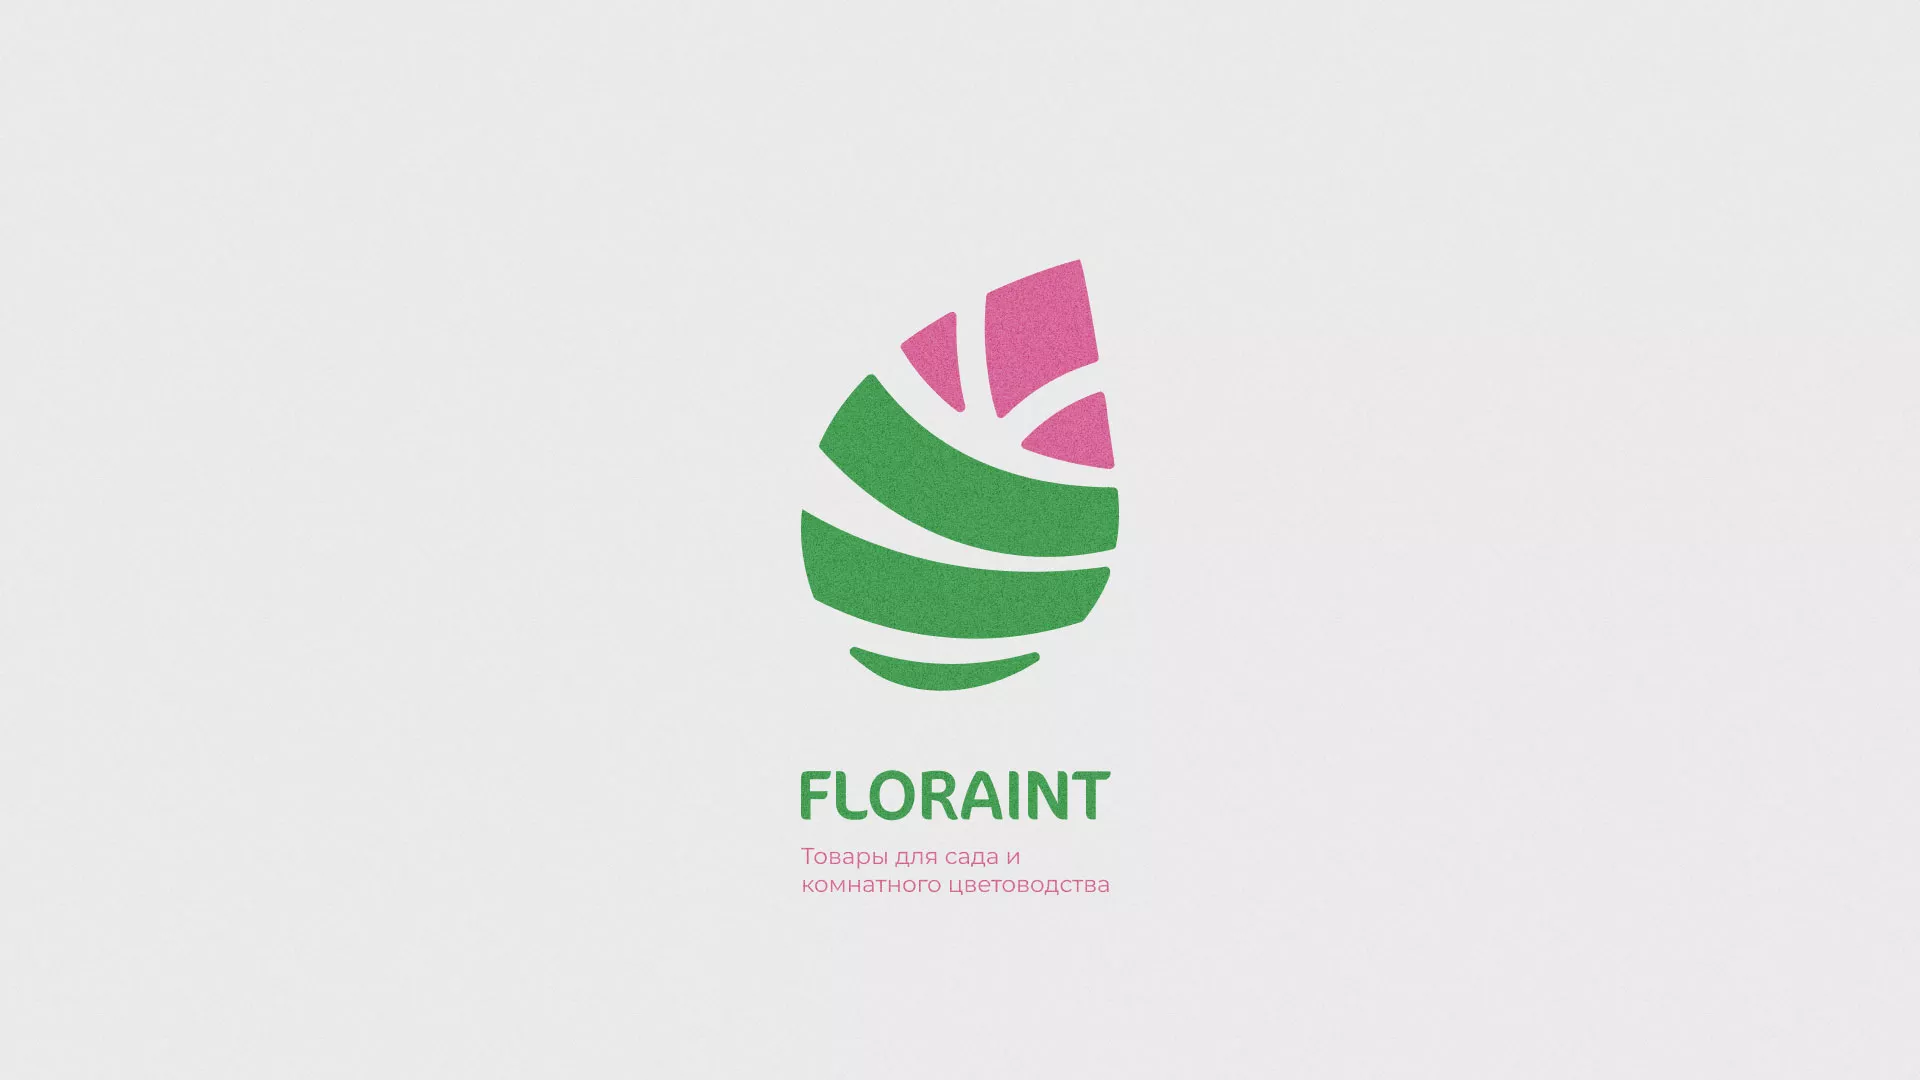 Разработка оформления профиля Instagram для магазина «Floraint» в Солигаличе